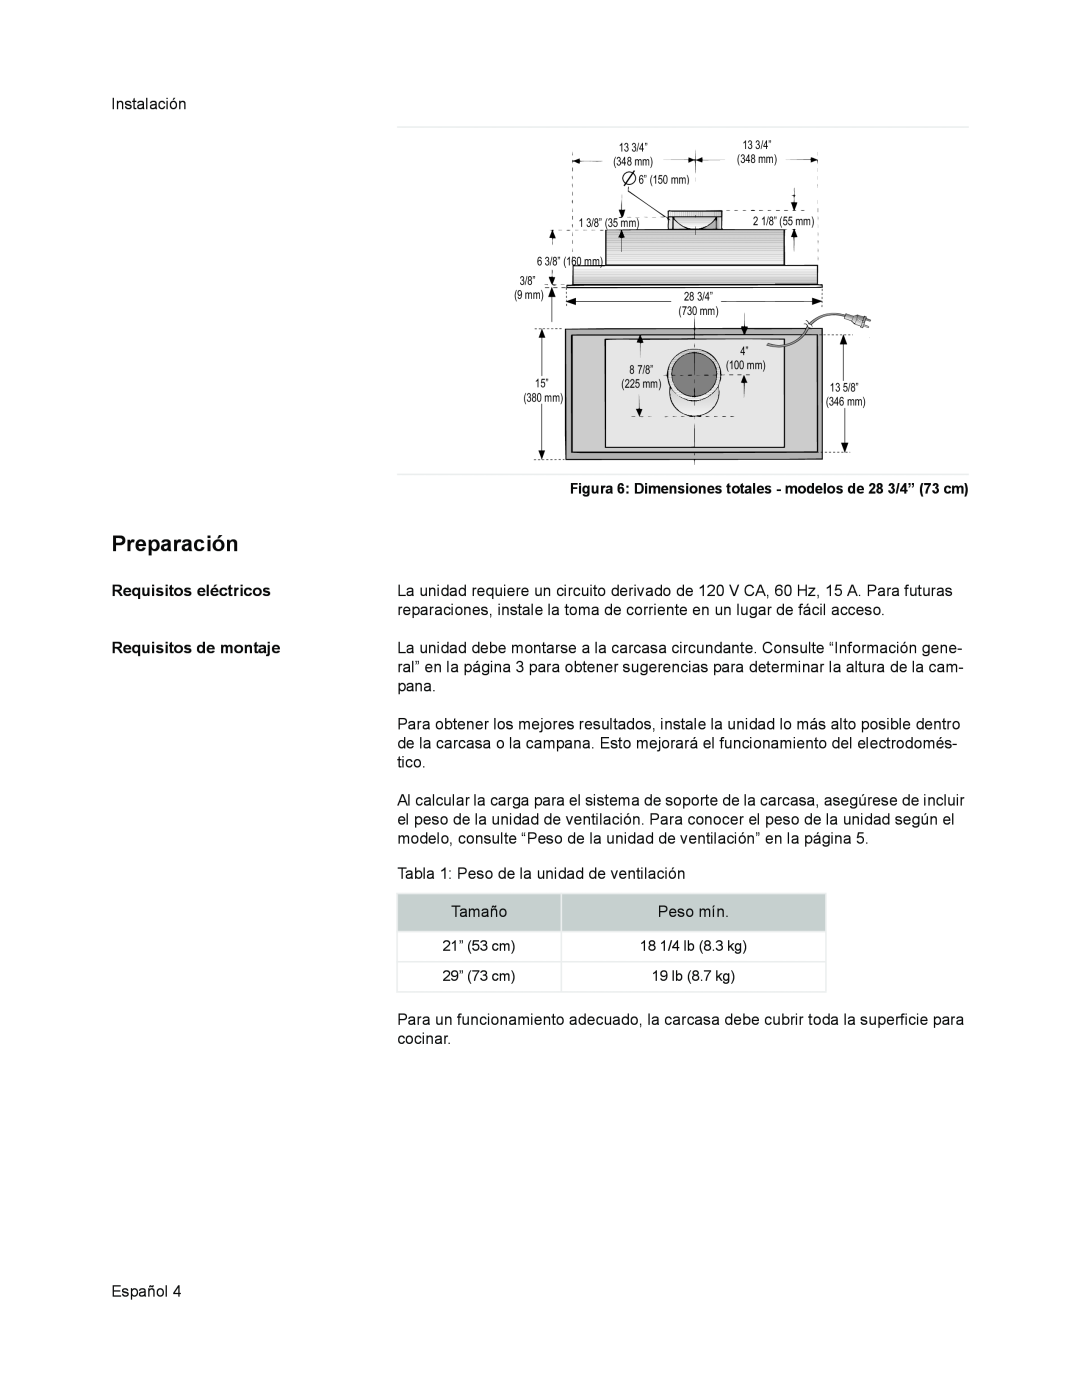 Thermador VCI2 installation manual Preparación, Requisitos eléctricos, Requisitos de montaje 